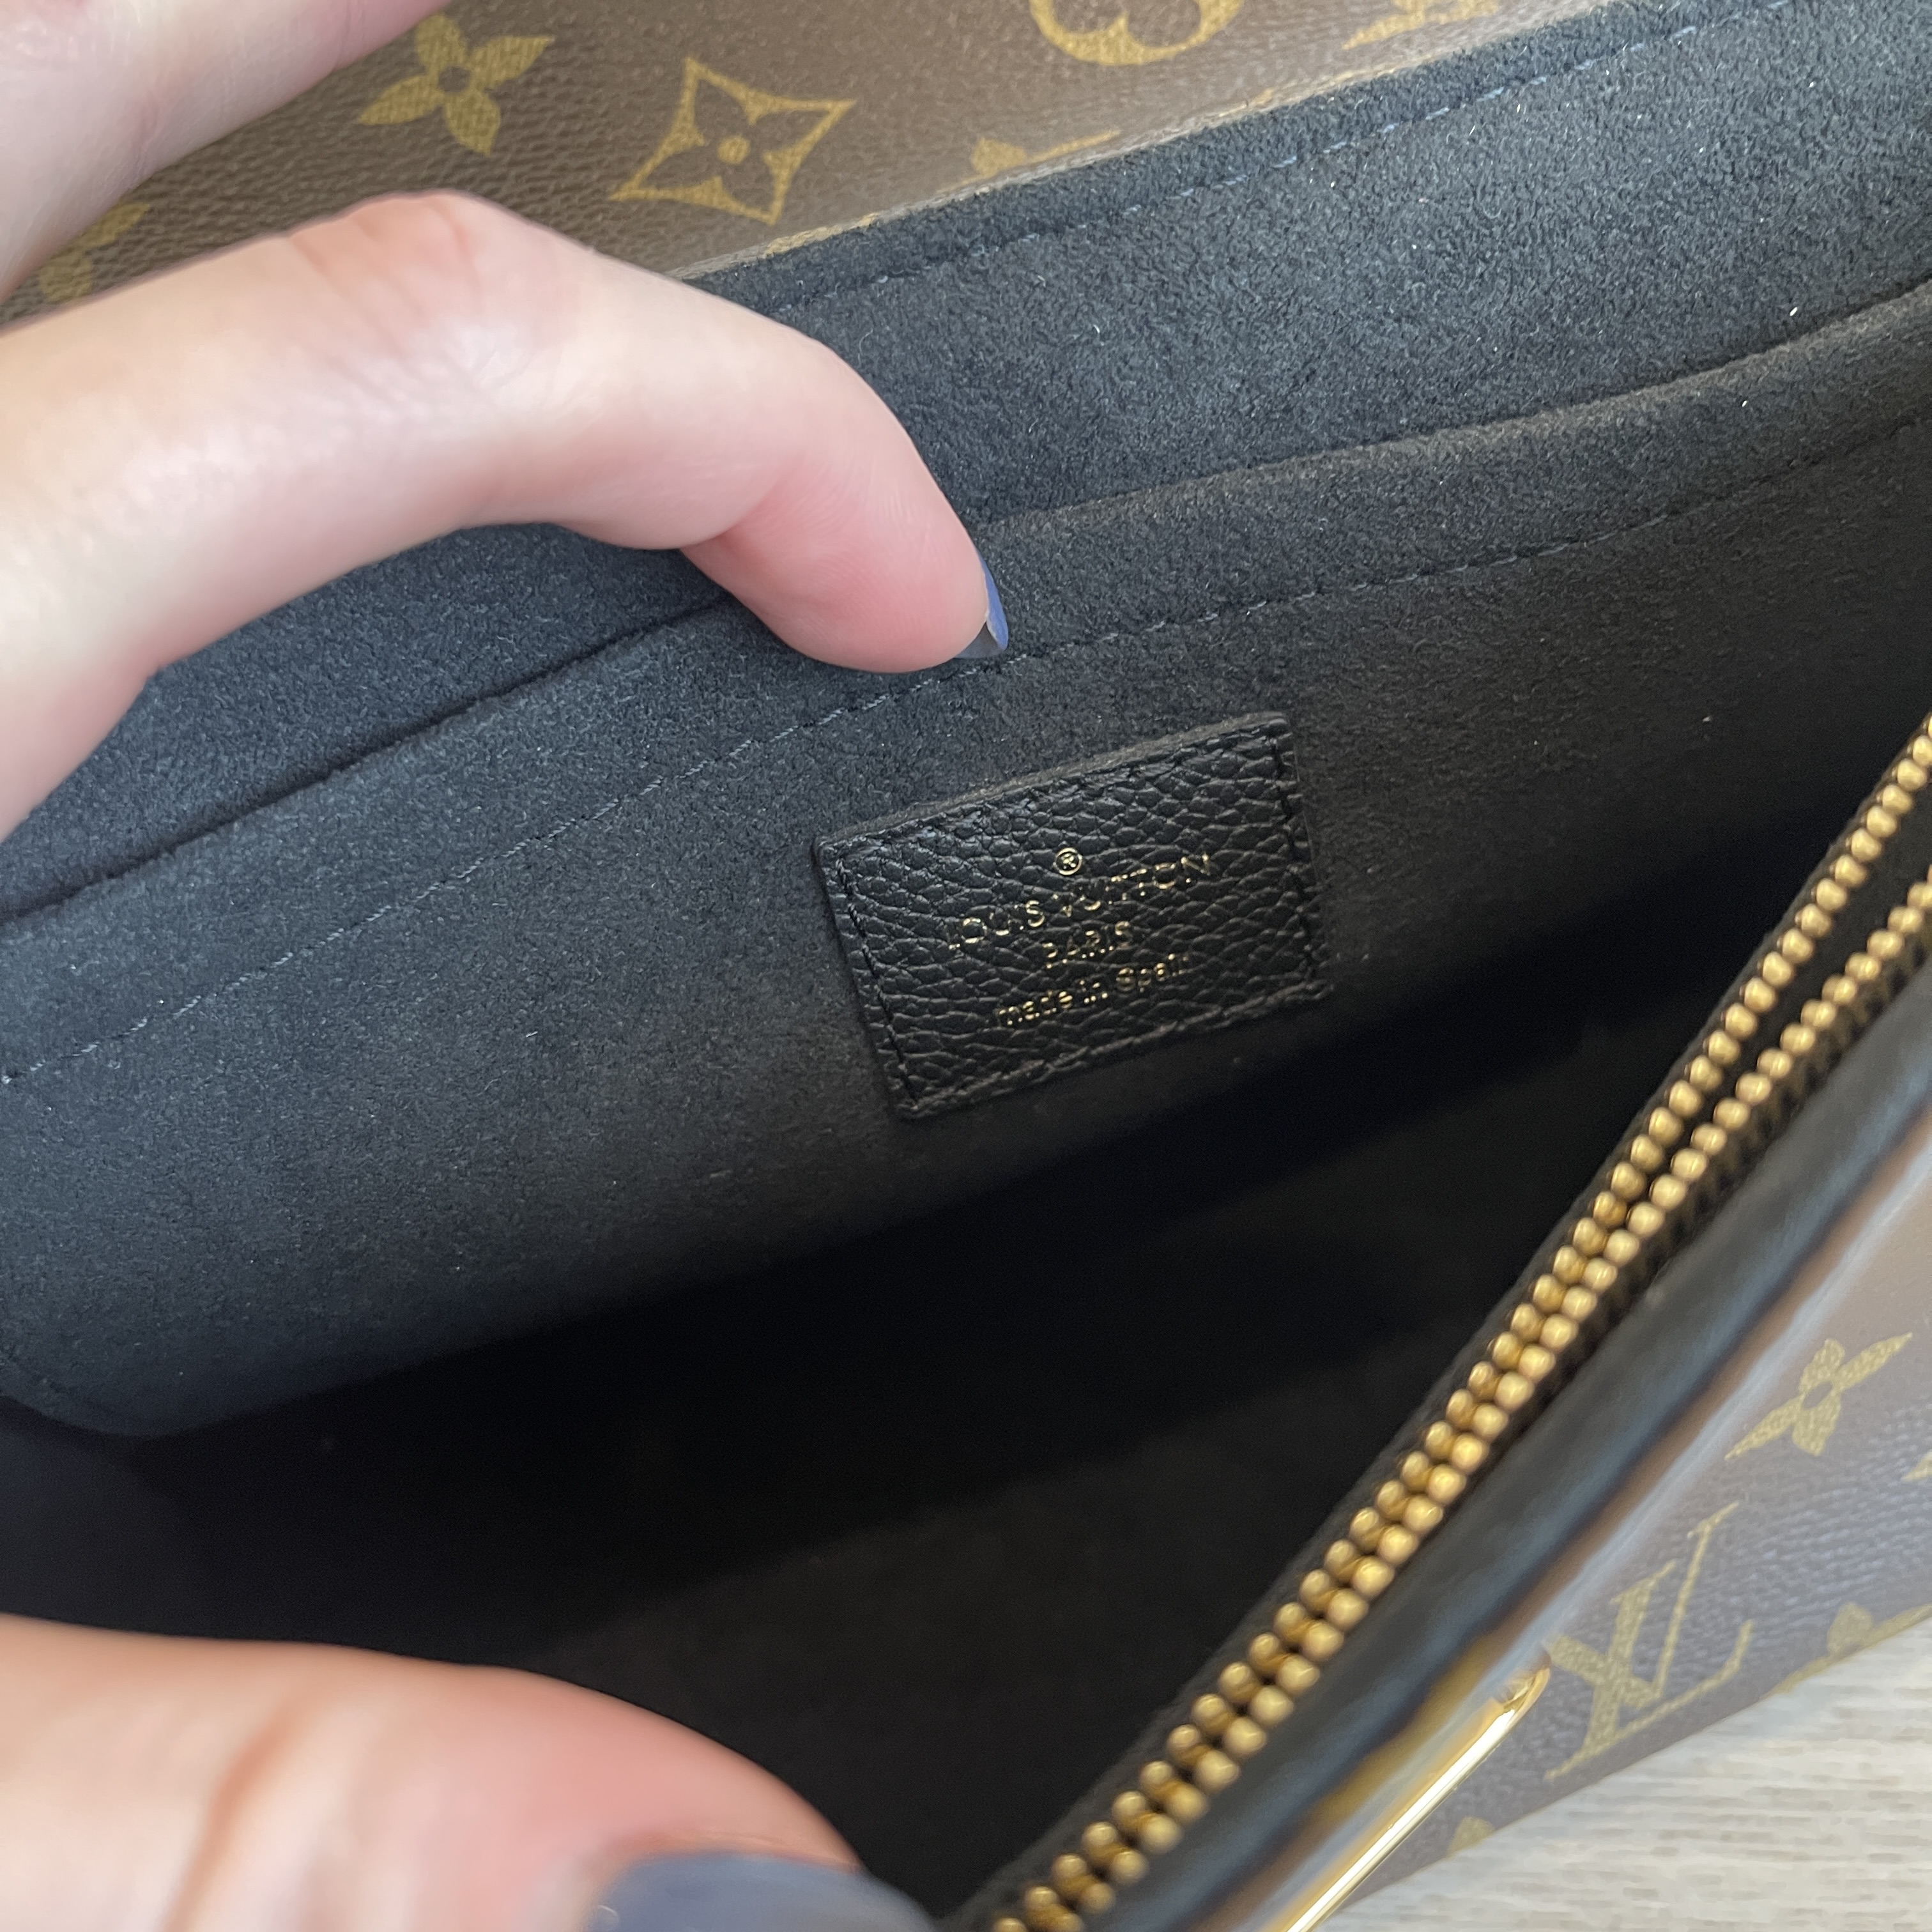 Louis Vuitton St Saint Placide Monogram Python Bag Purse N90234 Retail  $3150